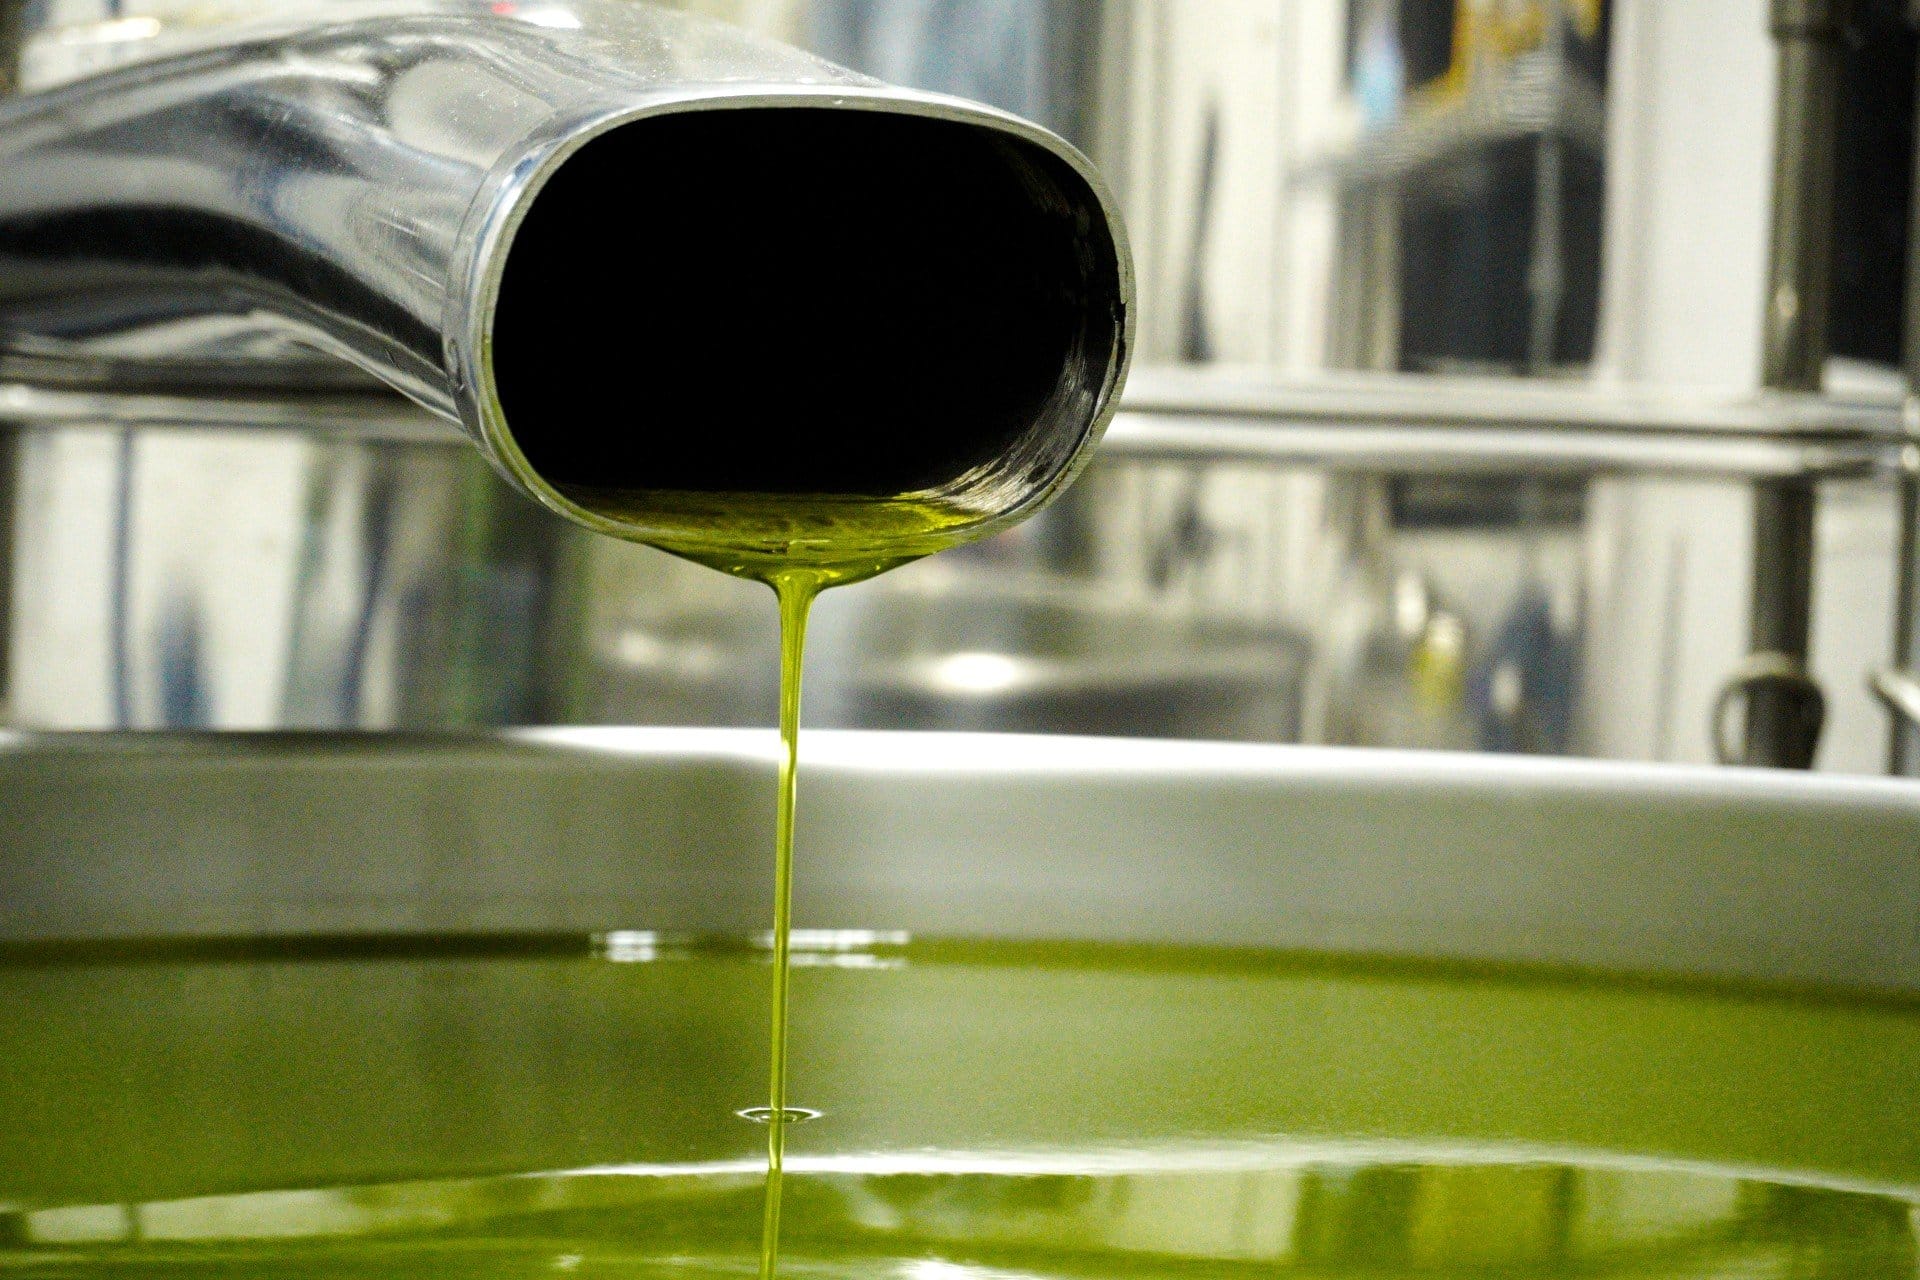 южная-америка-профили-лучшее-производство-оливкового-масла-бразилия-крупнейший-производитель-празднует-триумфальный-урожай-времена-оливкового-масла